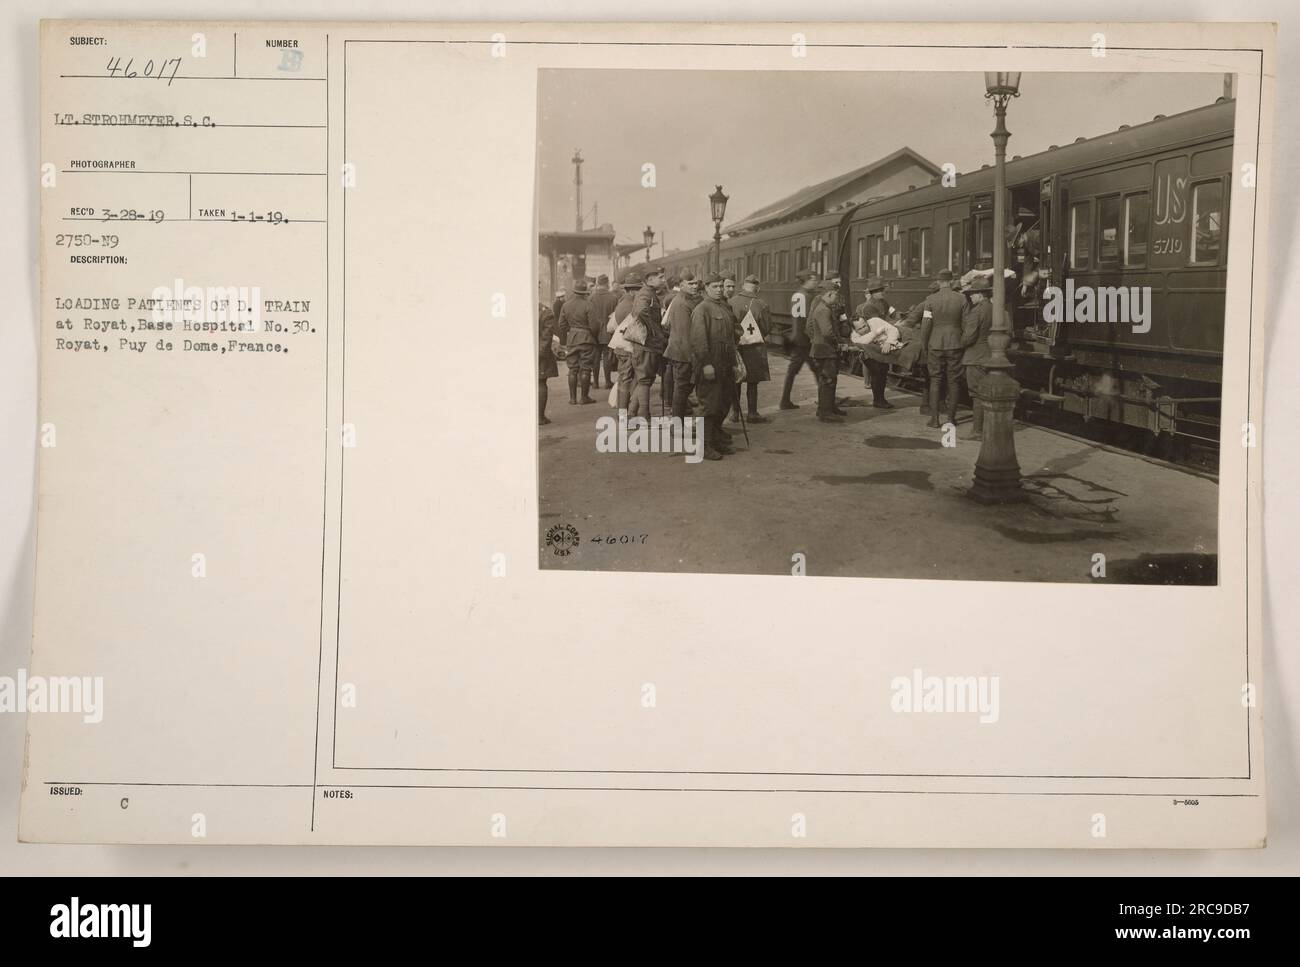 Pazienti caricati su un treno D. a Royat, ospedale base n. 30 a Royat, Puy de Dome, Francia. La fotografia è stata scattata dal tenente Strohmeyer, S.C. il 29 marzo 1919 e pubblicata con le note 46017 5719. Foto Stock